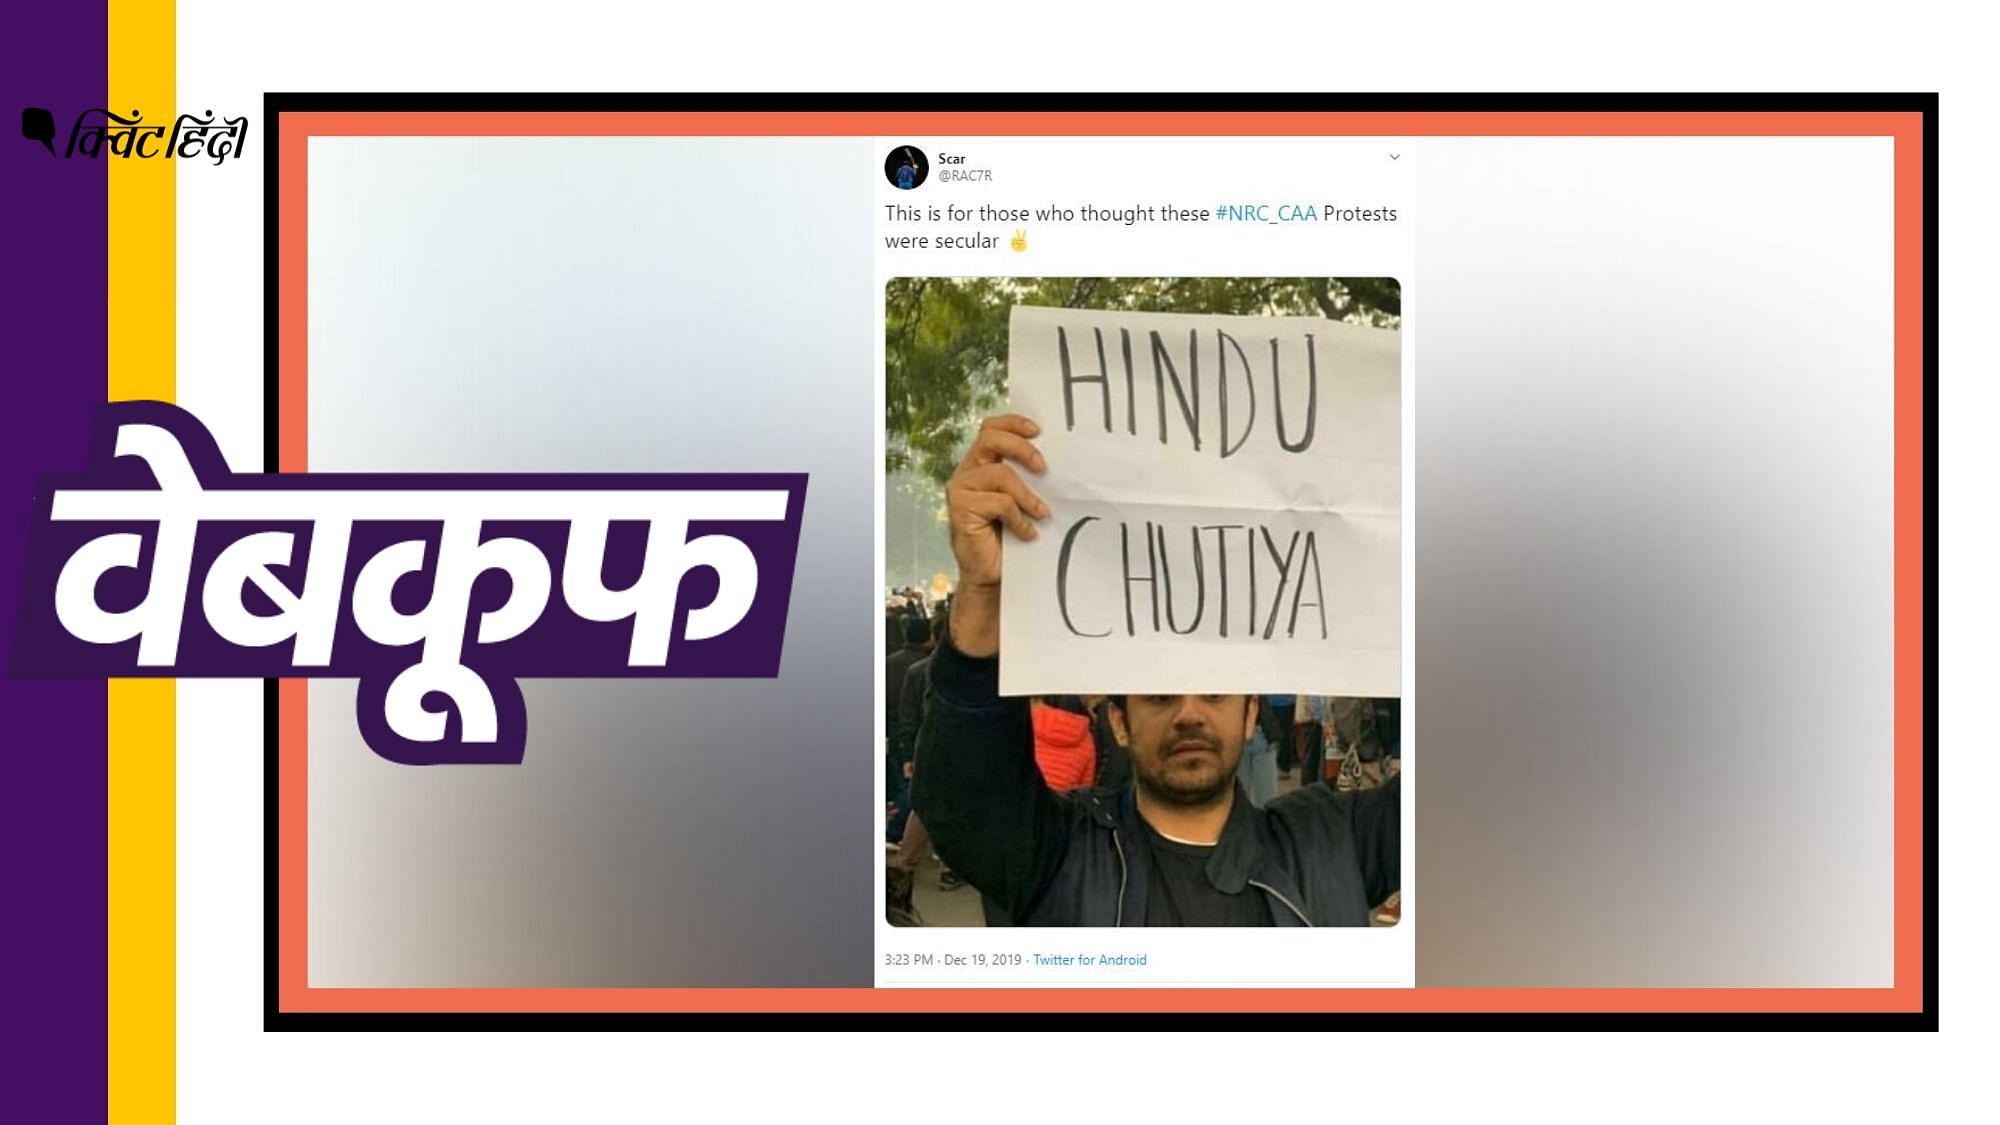 इंटरनेट पर एक तस्वीर फैलाई जा रही है जिसमें एक प्रदर्शनकारी  हिंदू समुदाय के लिए अपशब्द लिखी तख्ती लिए खड़ा है.&nbsp;